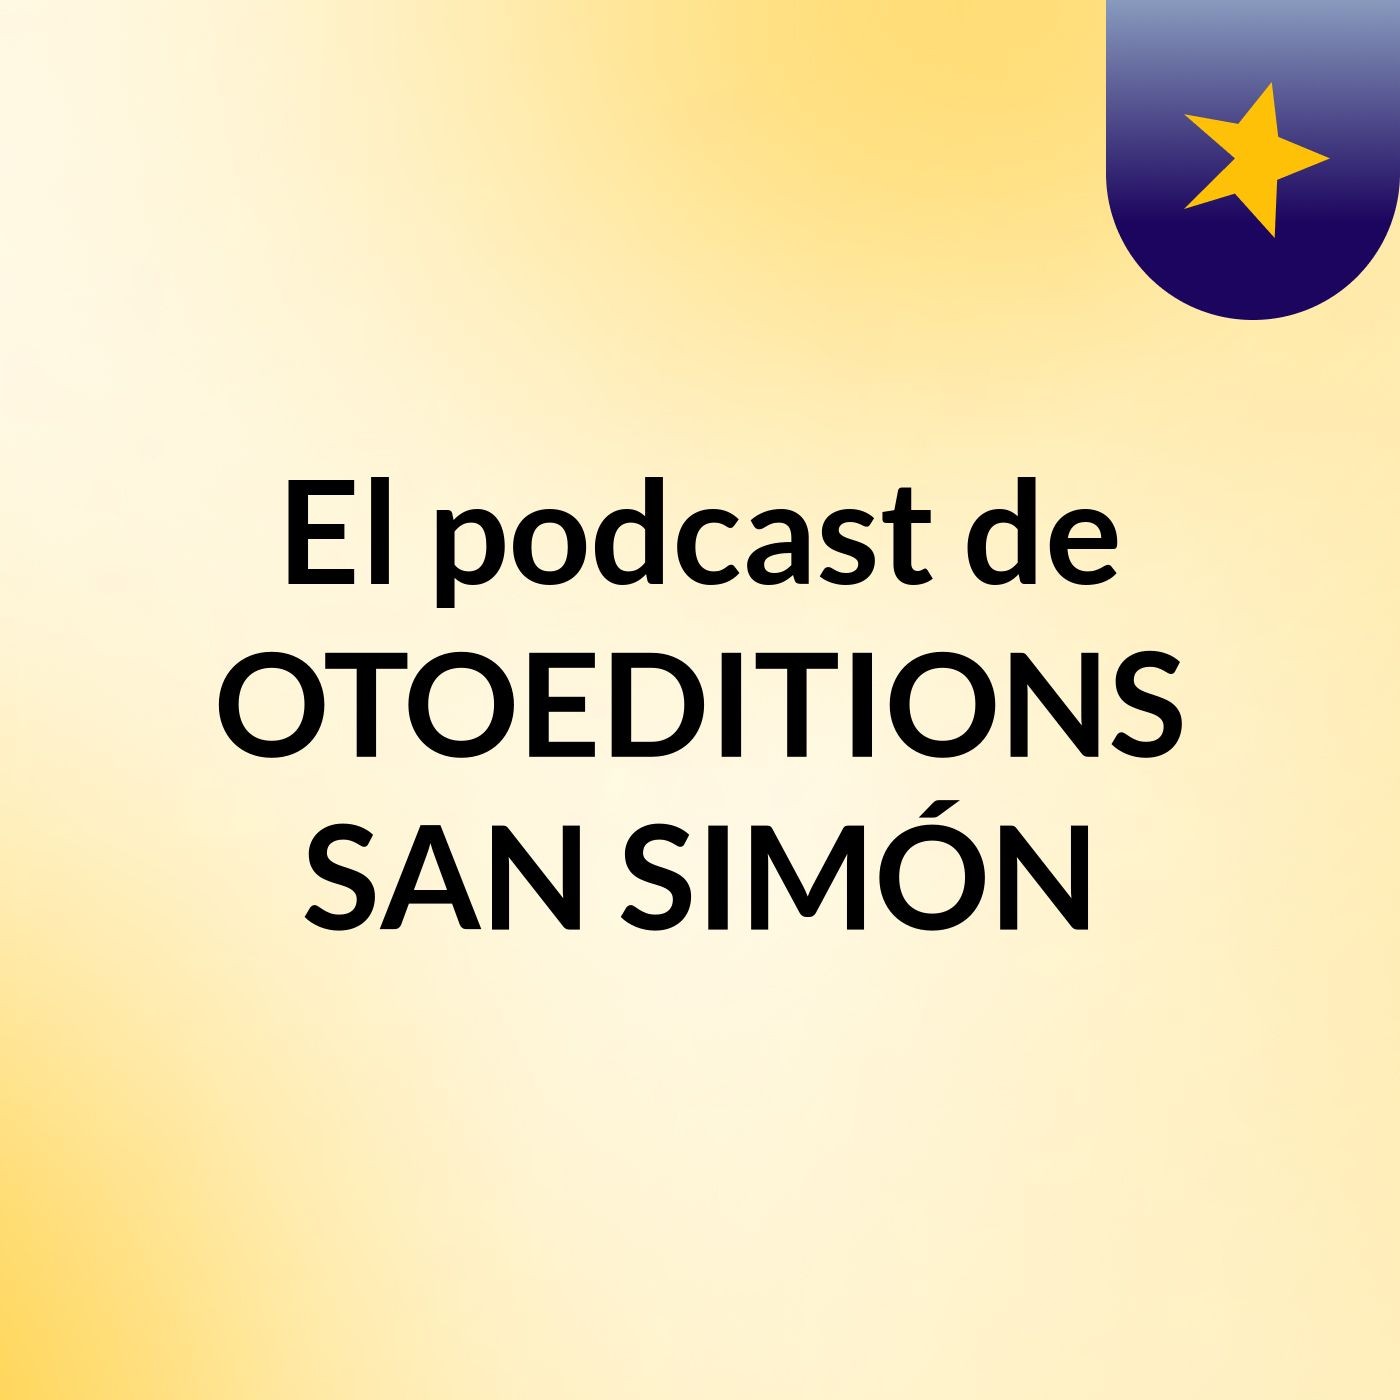 El podcast de OTOEDITIONS SAN SIMÓN